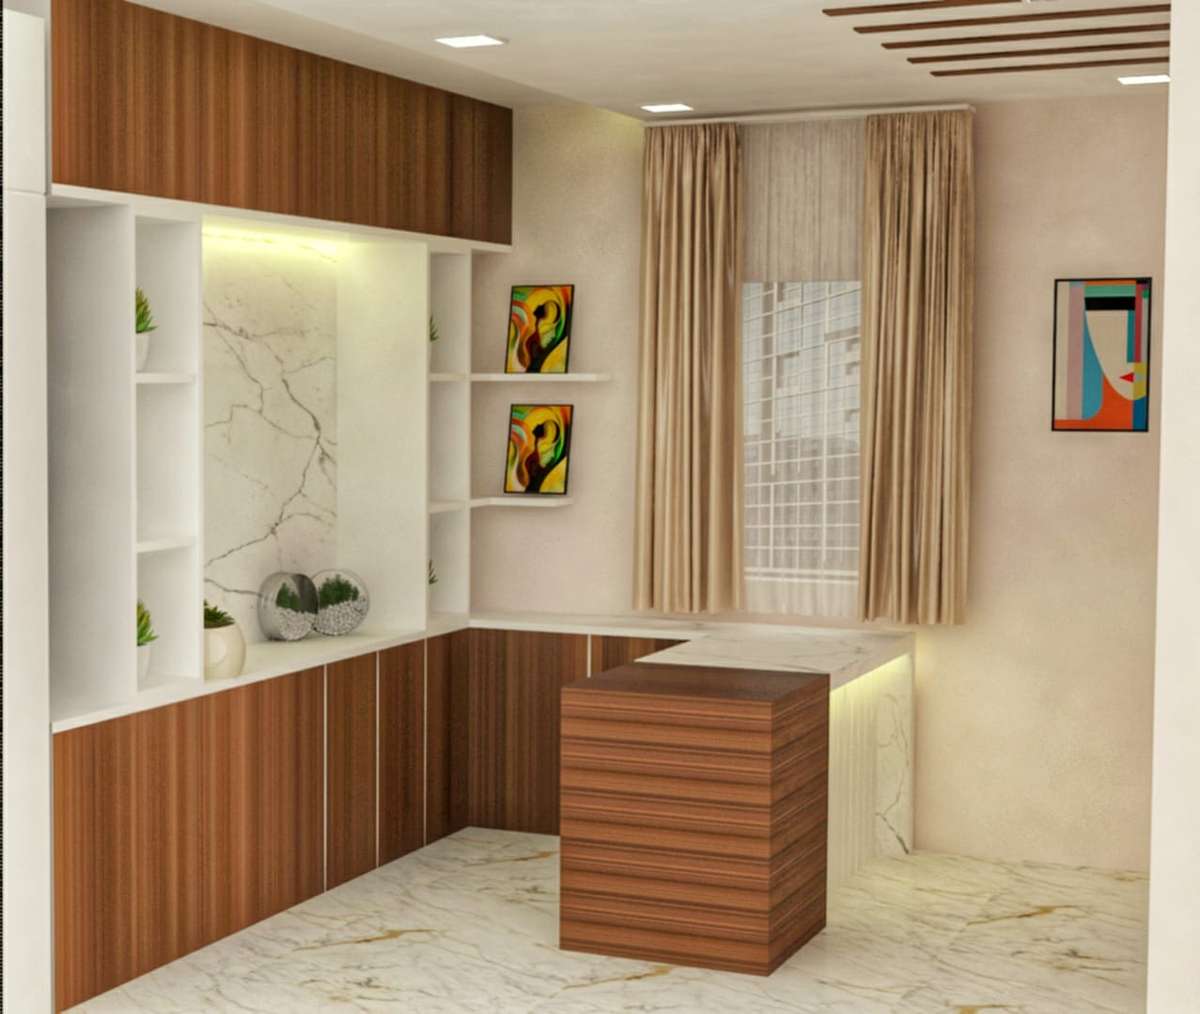 Designs by Interior Designer Suyashi Pandey, Indore | Kolo